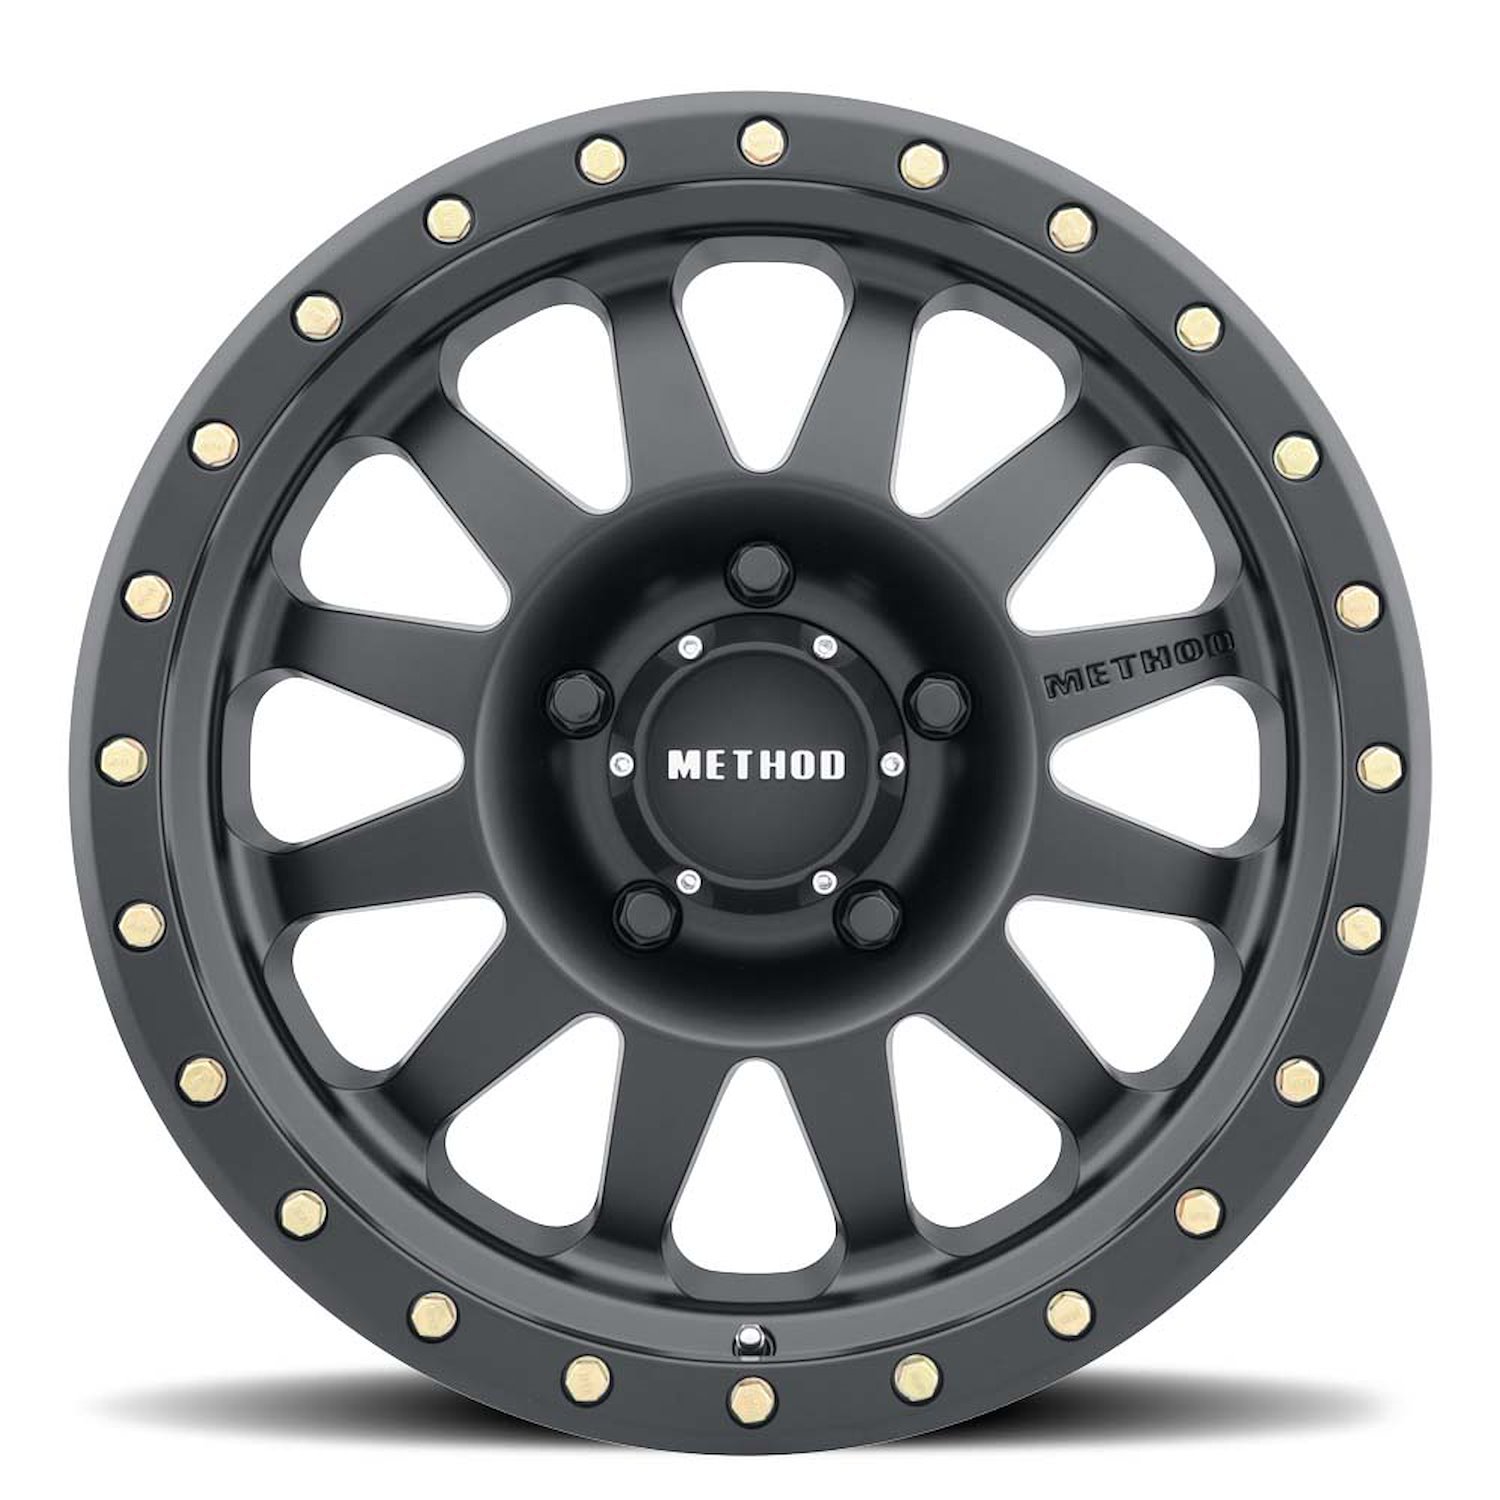 MR30478550500 STREET MR304 Double Standard Wheel [Size: 17" x 8.5"] Matte Black